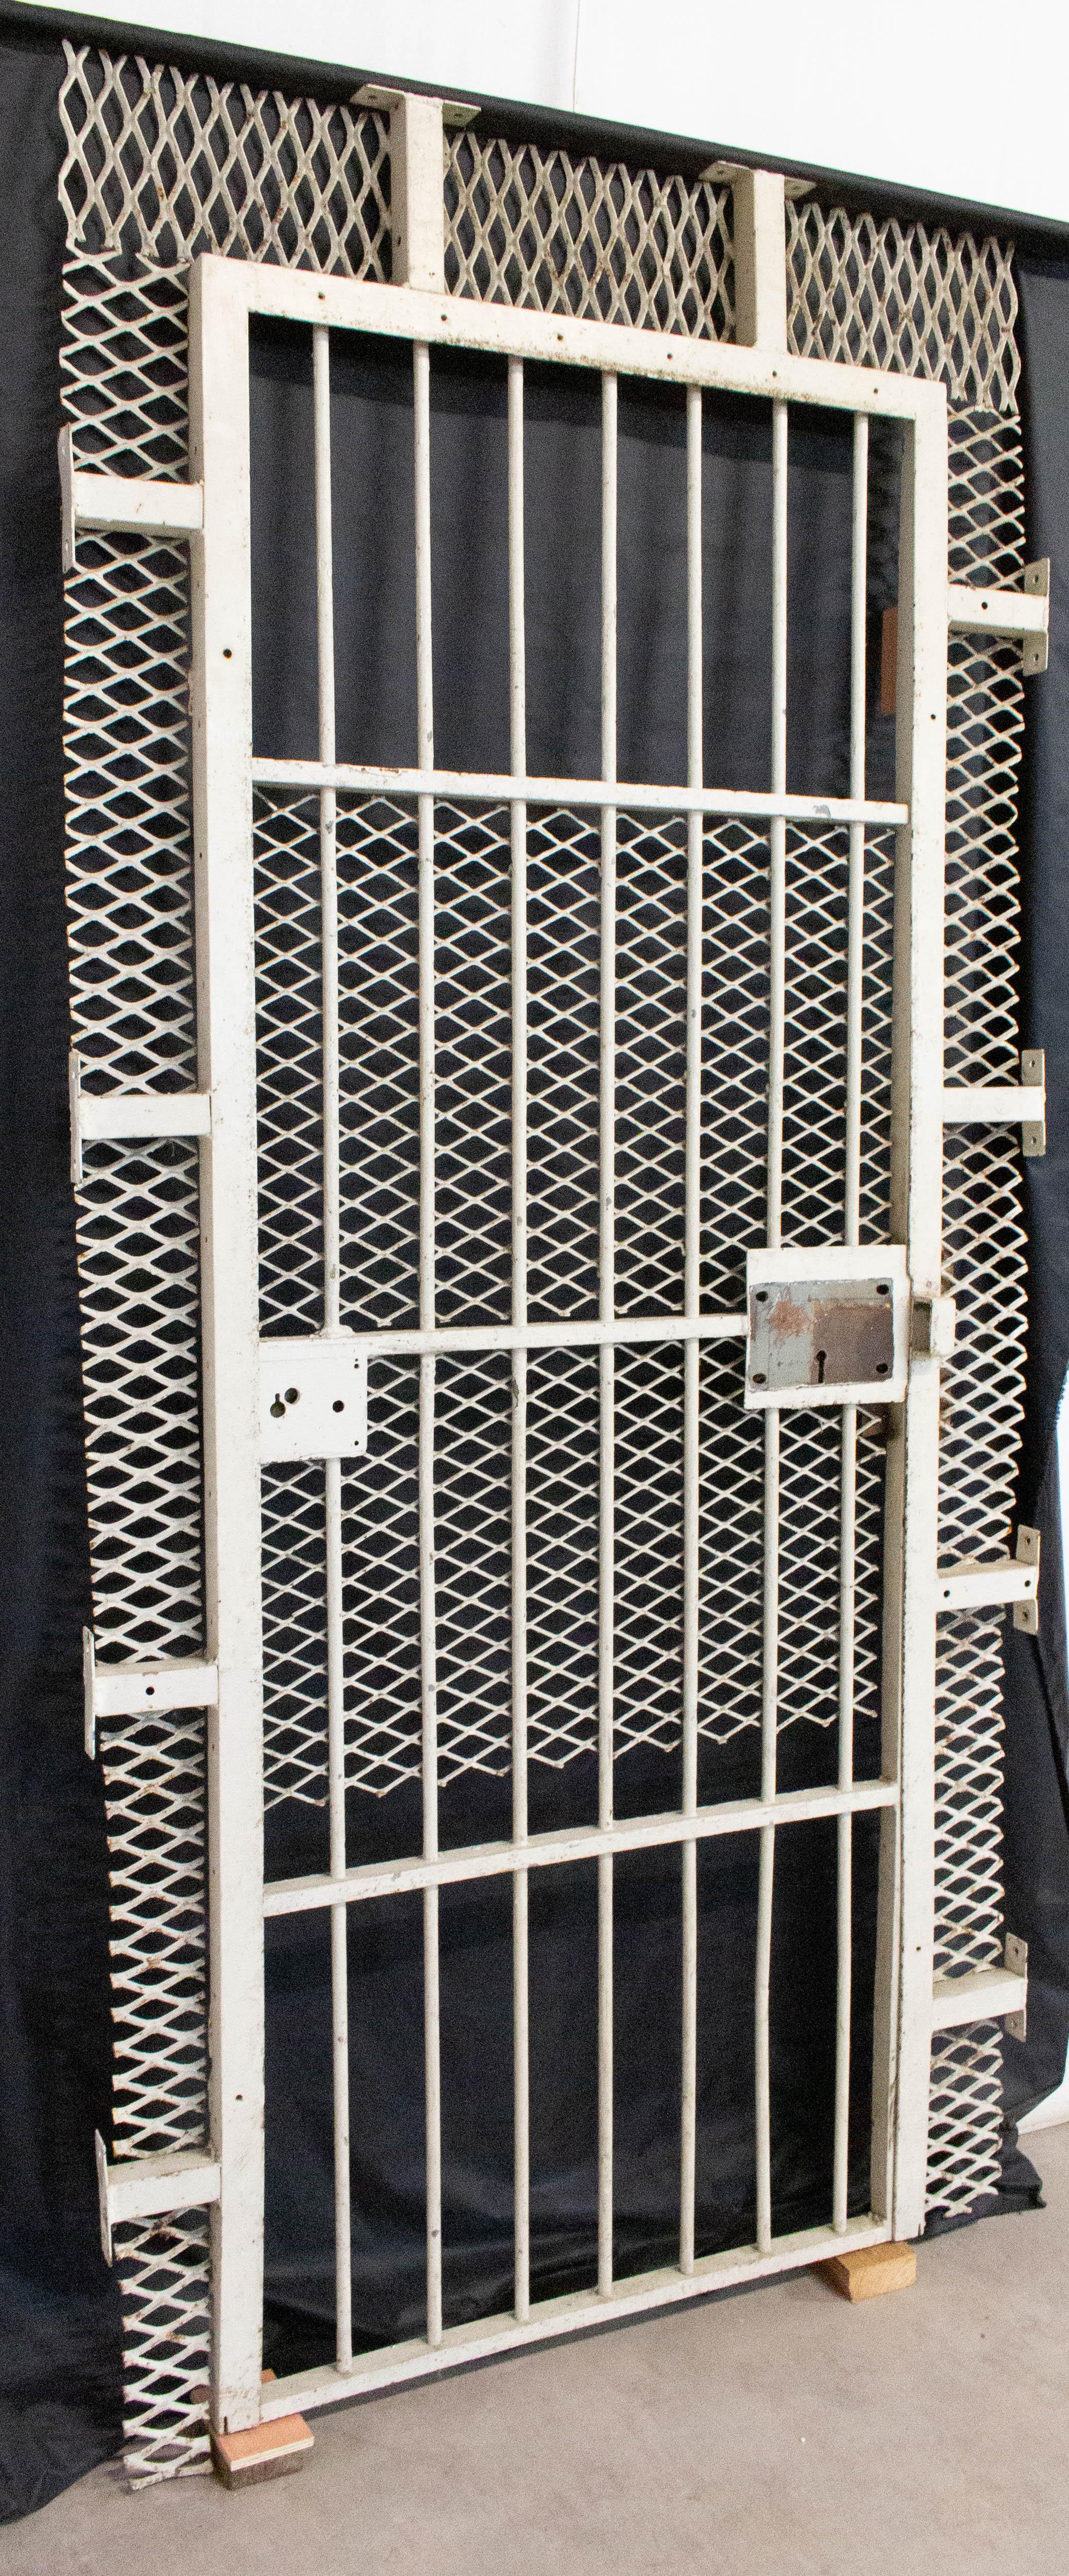 net door design iron